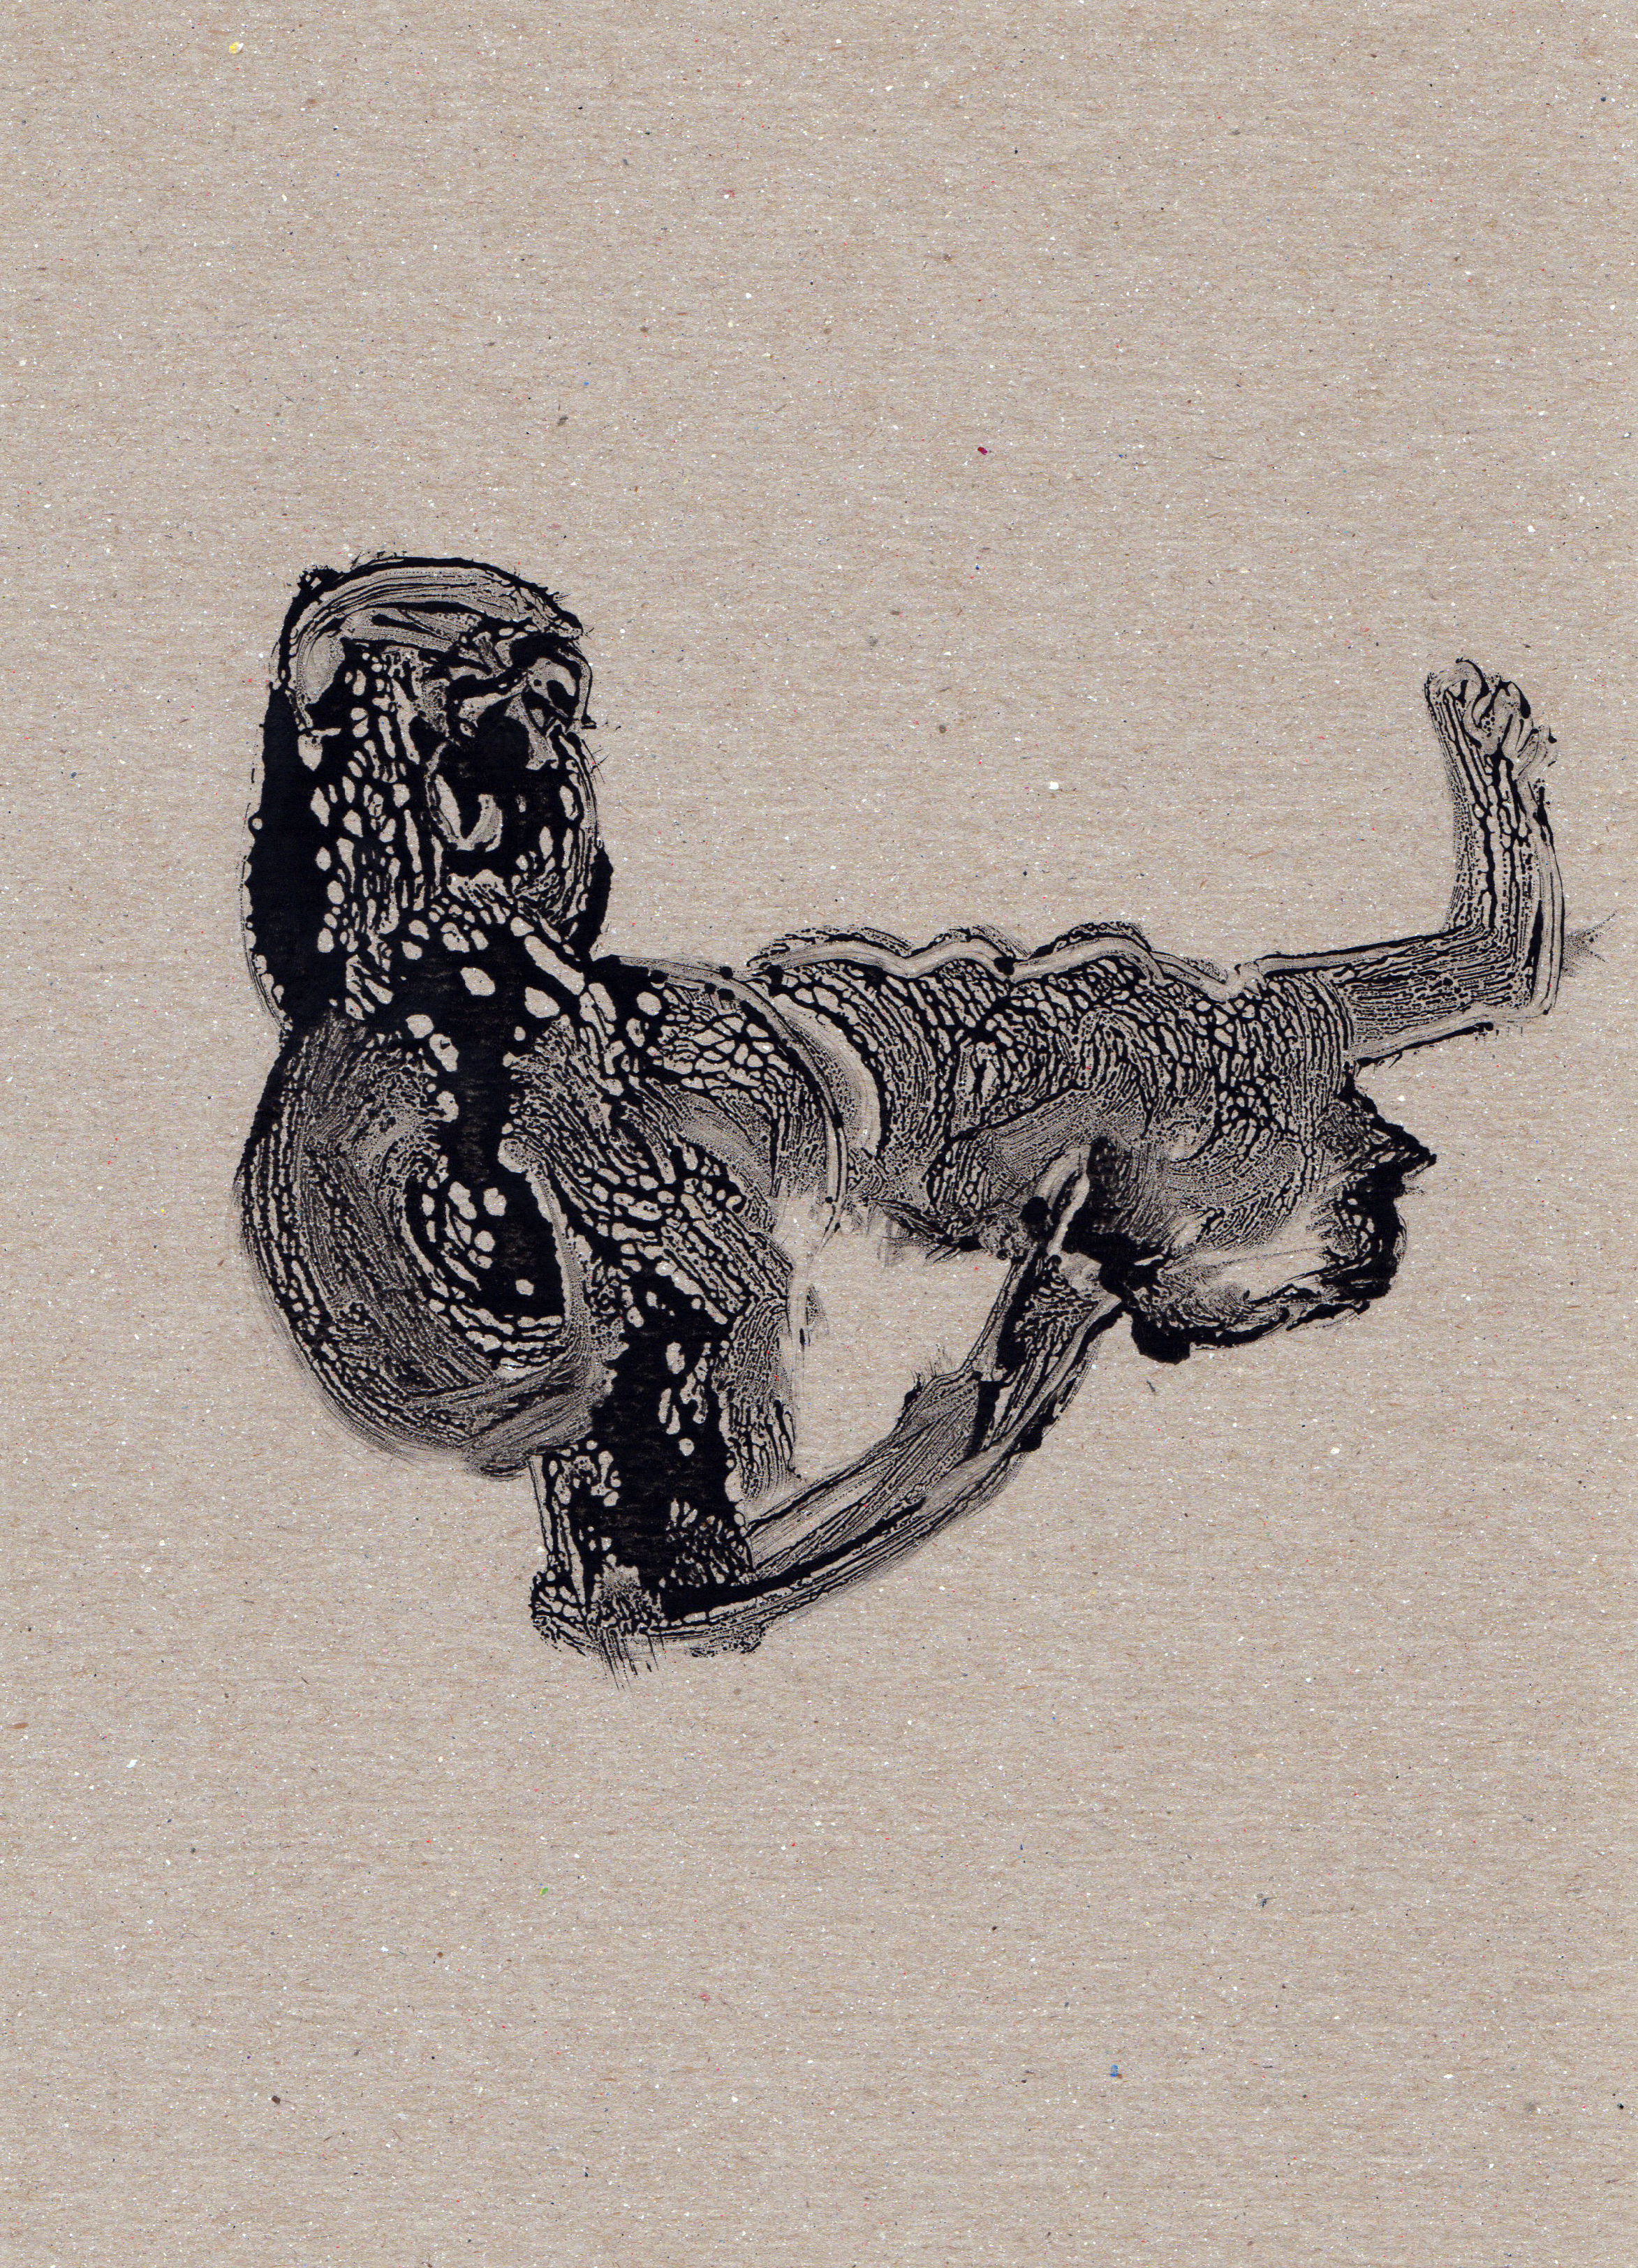 Untitled Rethinking, 2014, gelatin monotype, 11x8 inches